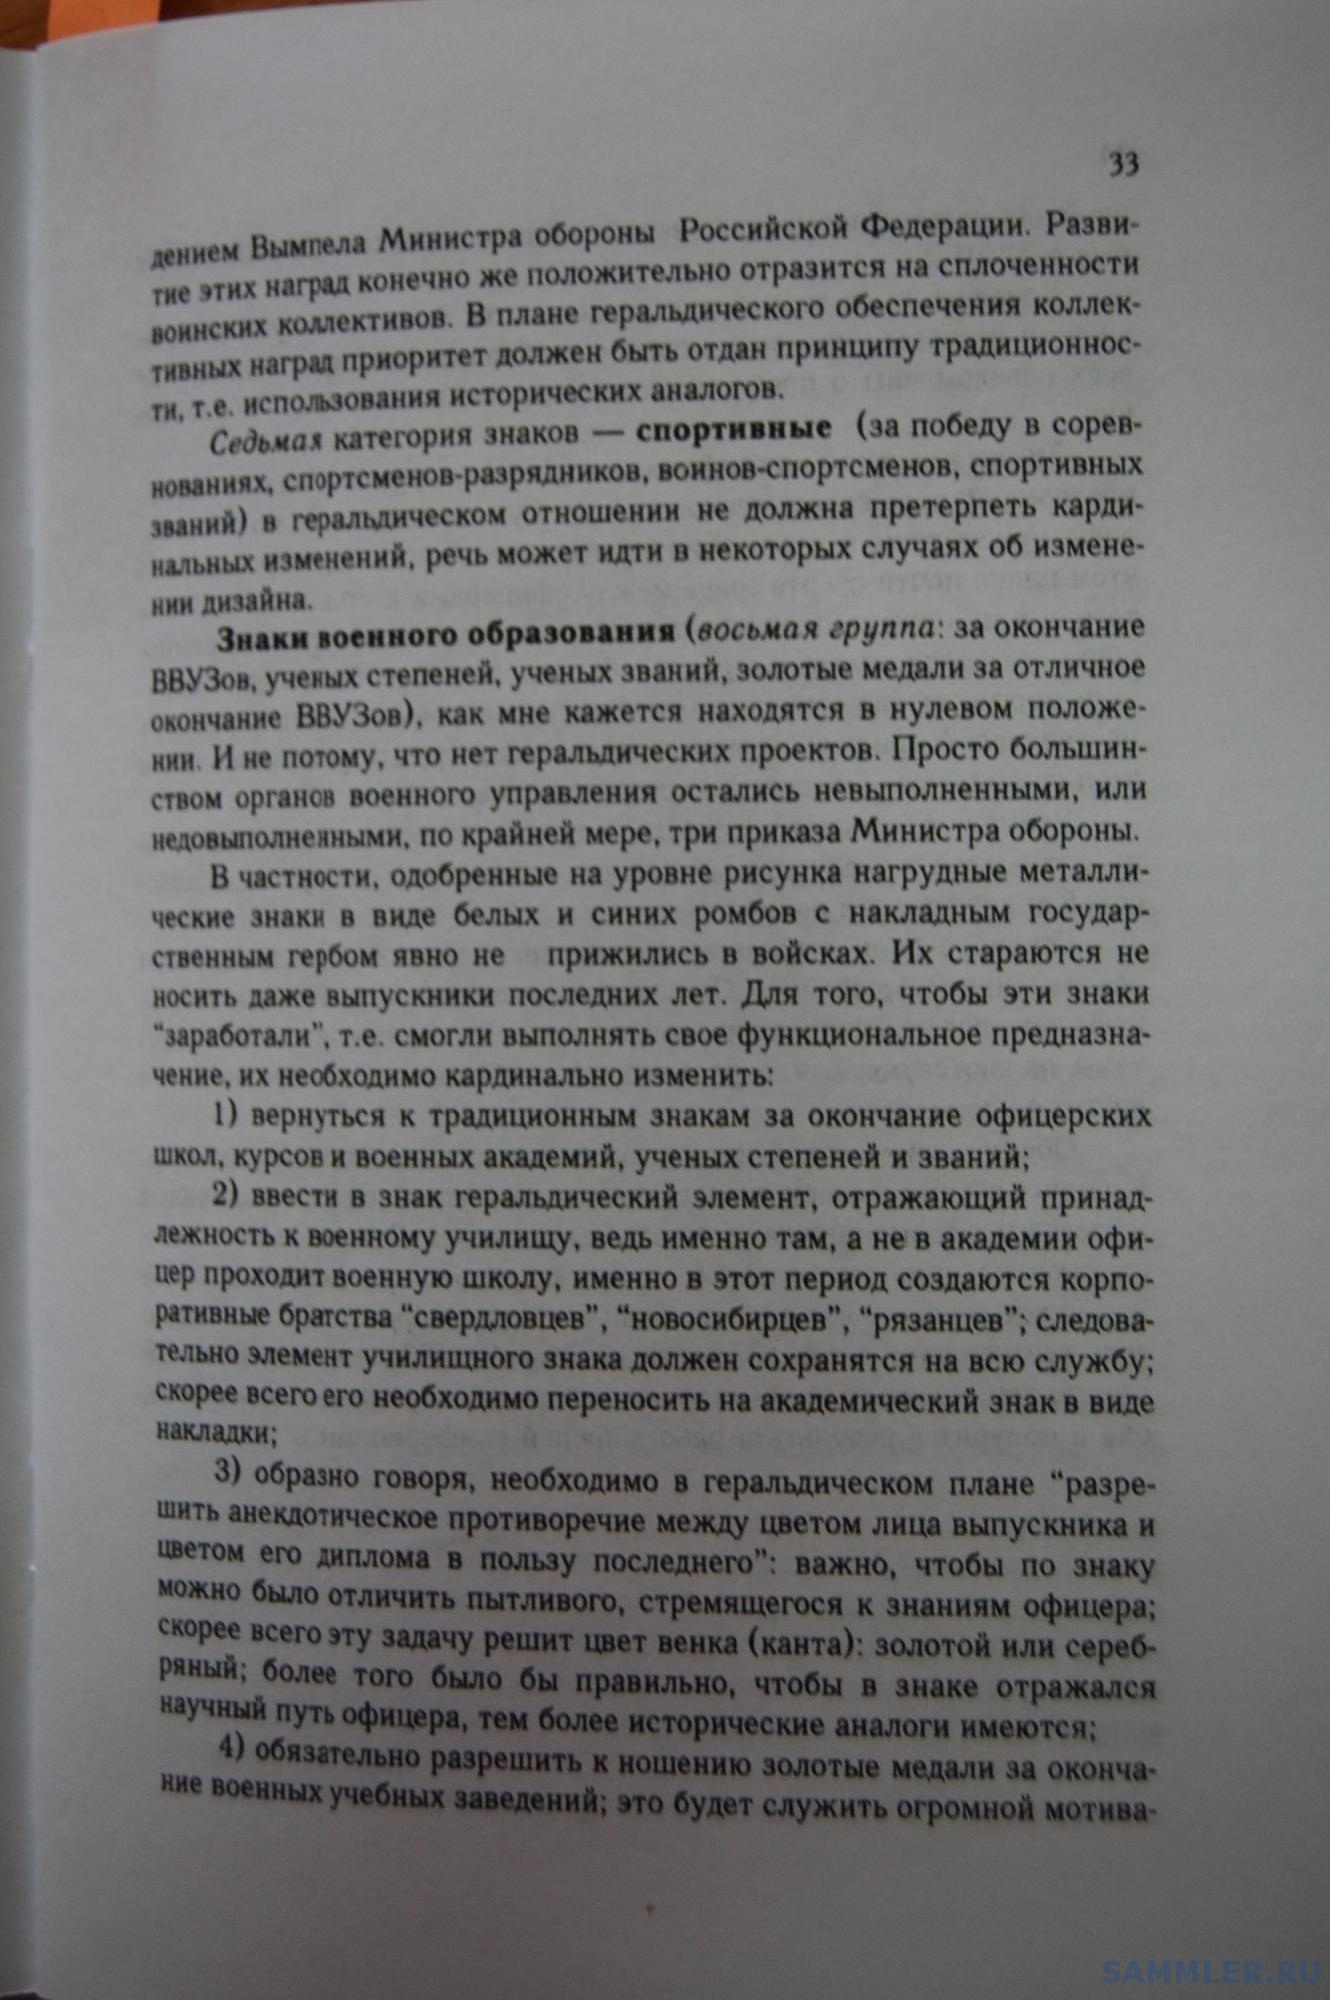 Кузнецов О.В. - Геральдическое обеспечение ВС РФ. М., 1999. С. 33.JPG